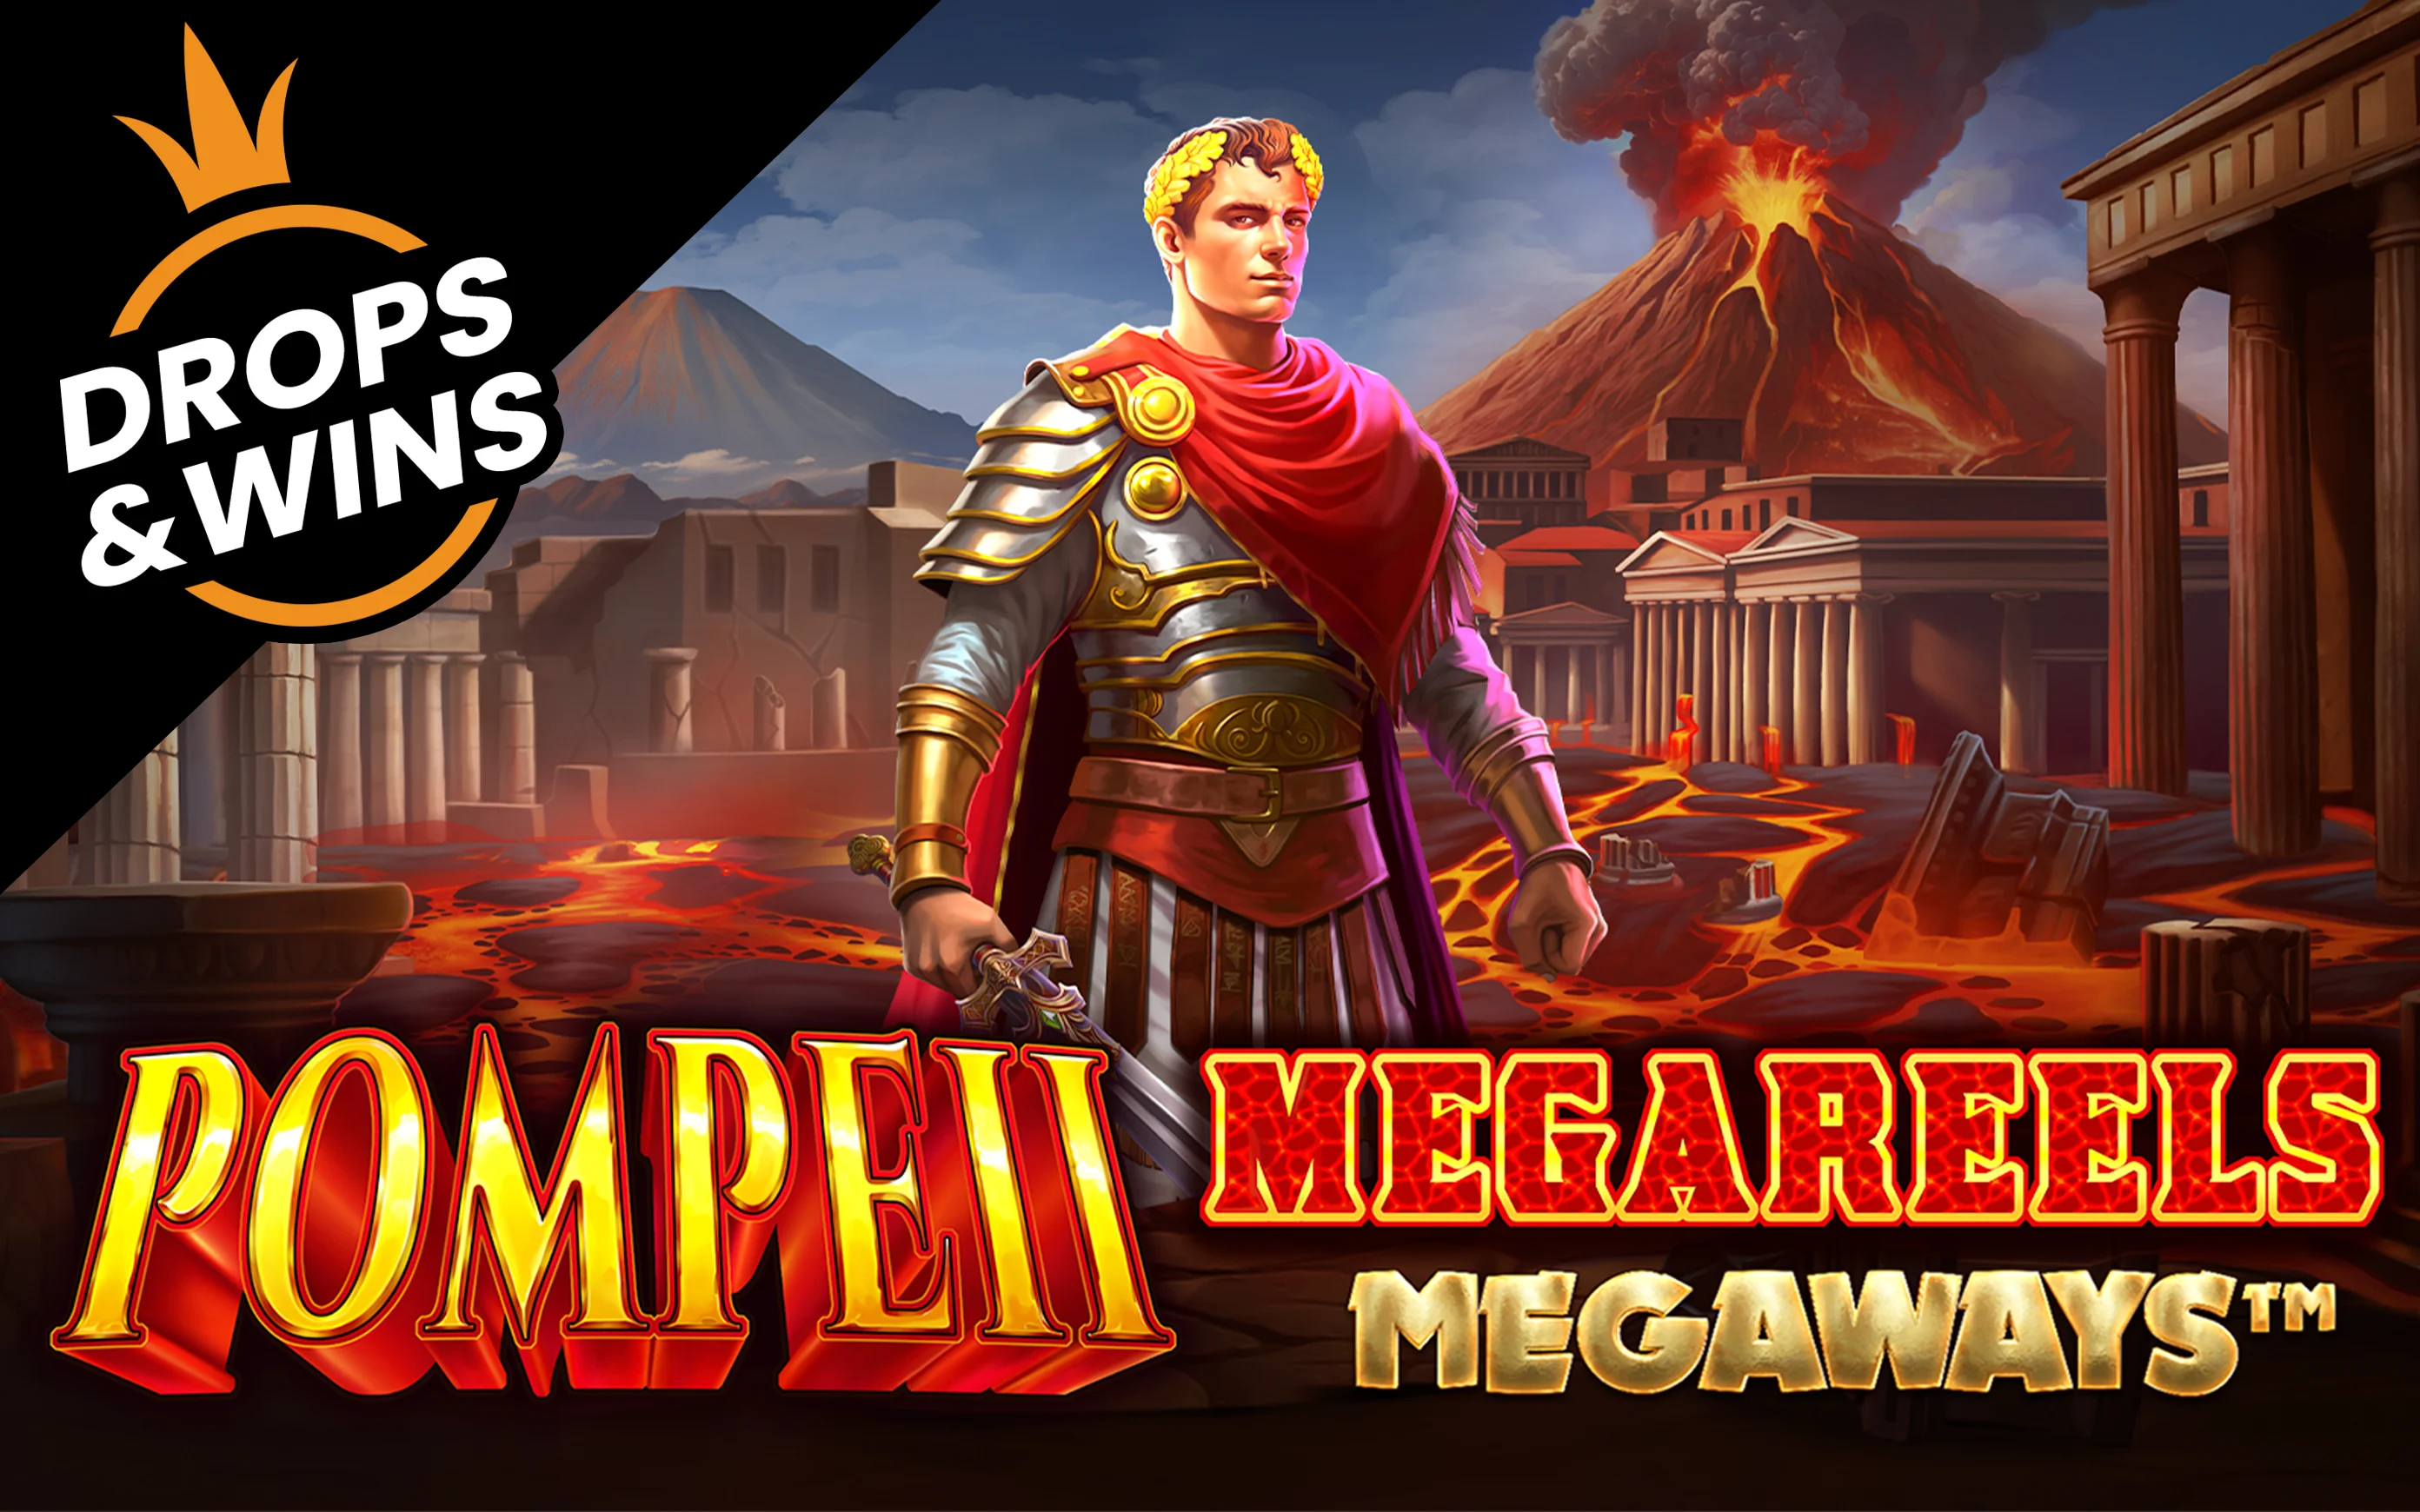 Παίξτε Pompeii Megareels Megaways™ στο online καζίνο Starcasino.be